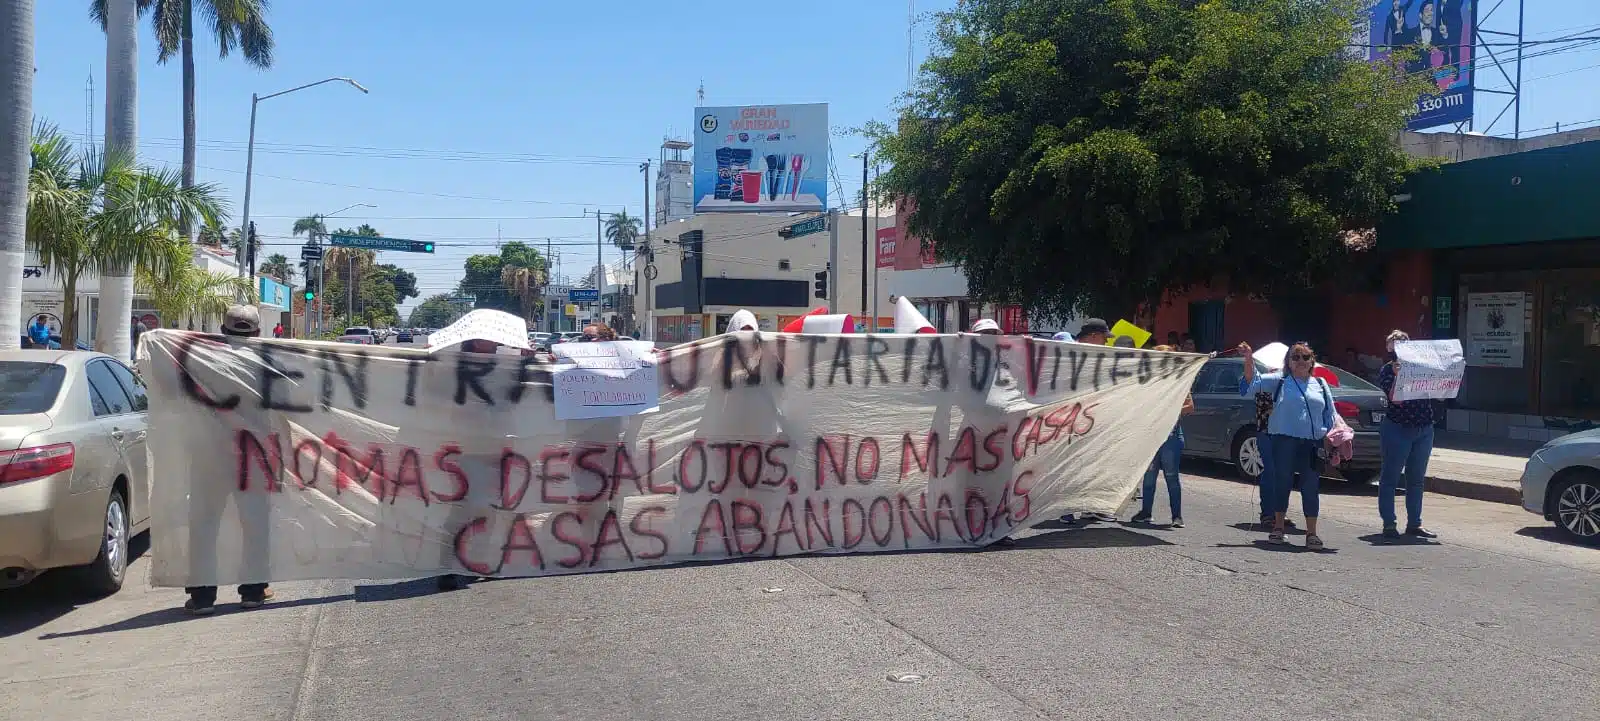 Bloquean calle frente a Cvive y exigen alto a desalojos de viviendas precaristas en Los Mochis